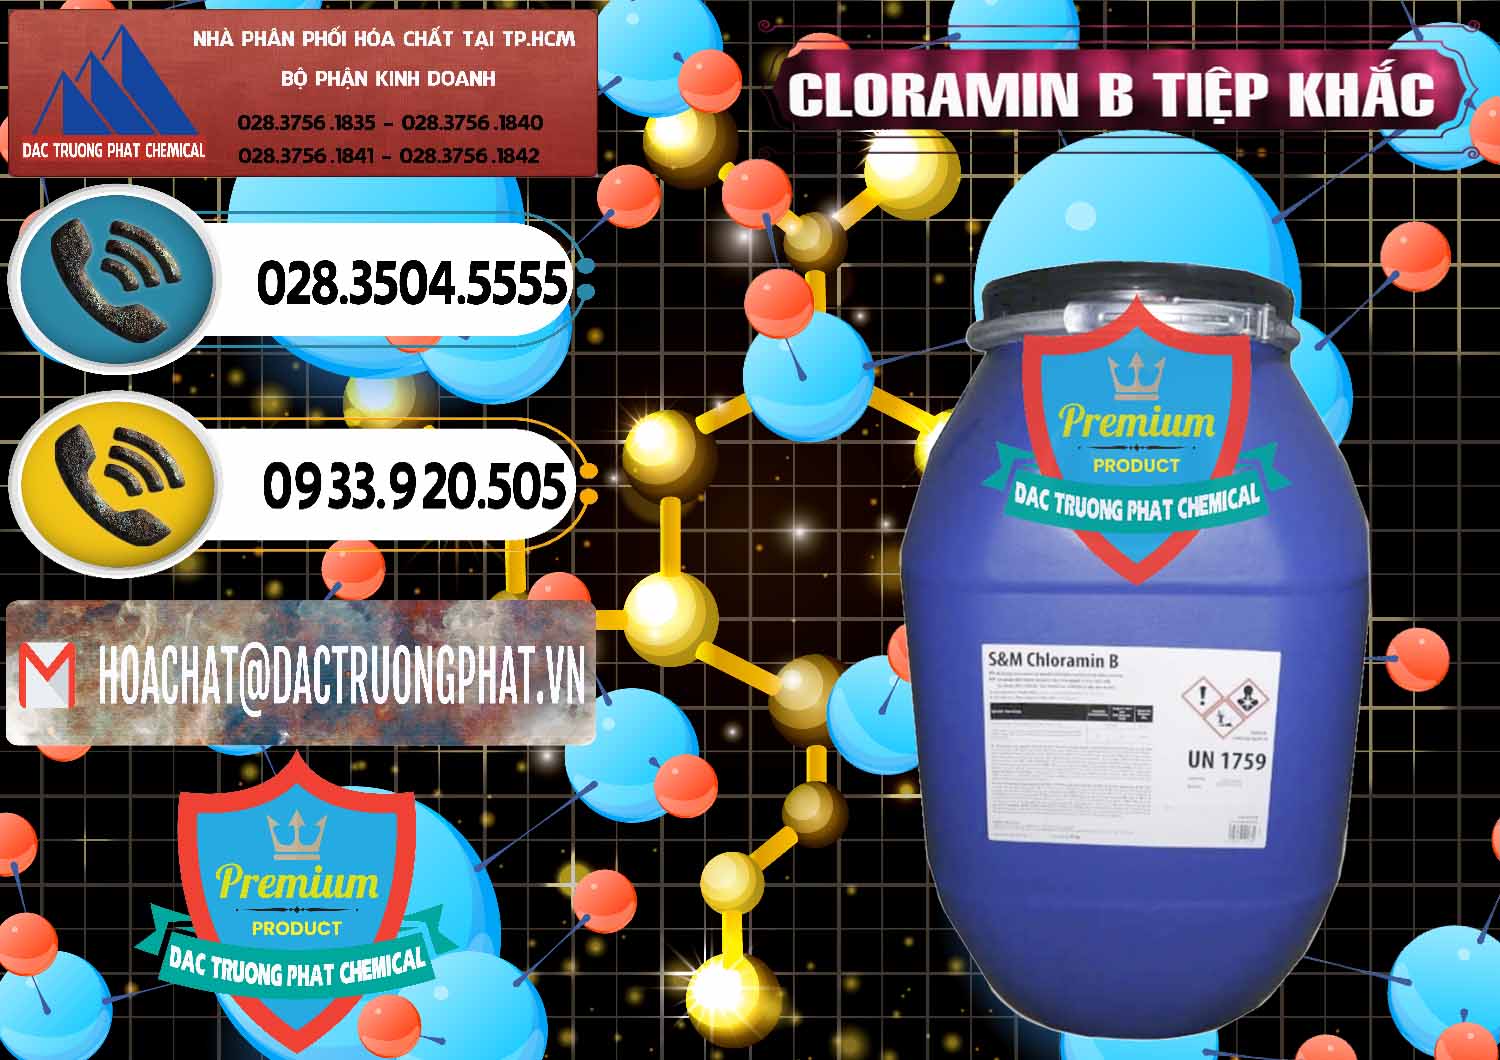 Nơi cung cấp & bán Cloramin B Cộng Hòa Séc Tiệp Khắc Czech Republic - 0299 - Nơi chuyên phân phối - nhập khẩu hóa chất tại TP.HCM - hoachatdetnhuom.vn